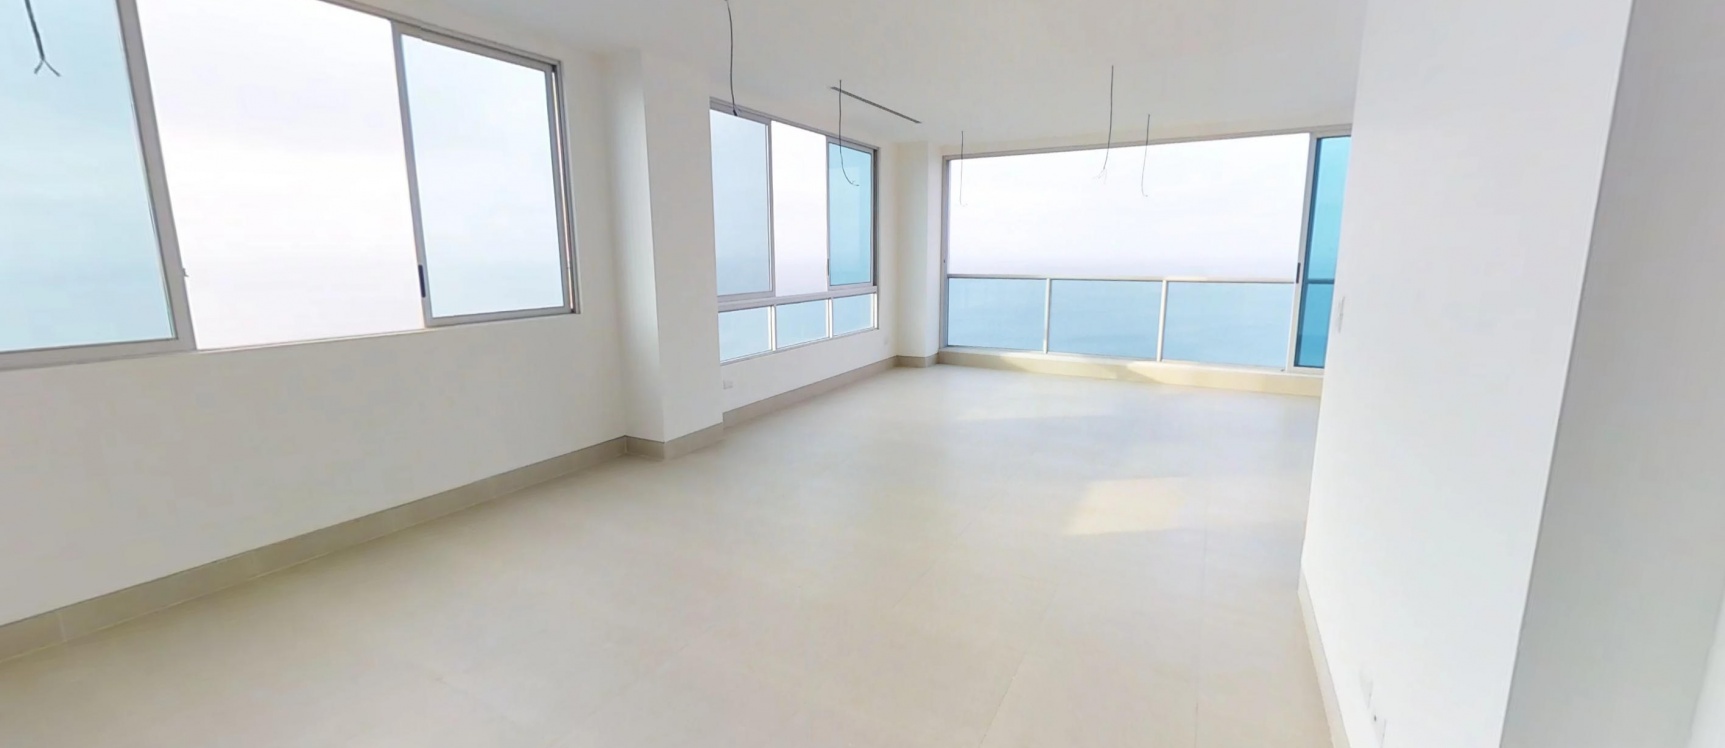 GeoBienes - Departamento en venta piso 18 en Bay Point San Lorenzo Salinas - Plusvalia Guayaquil Casas de venta y alquiler Inmobiliaria Ecuador